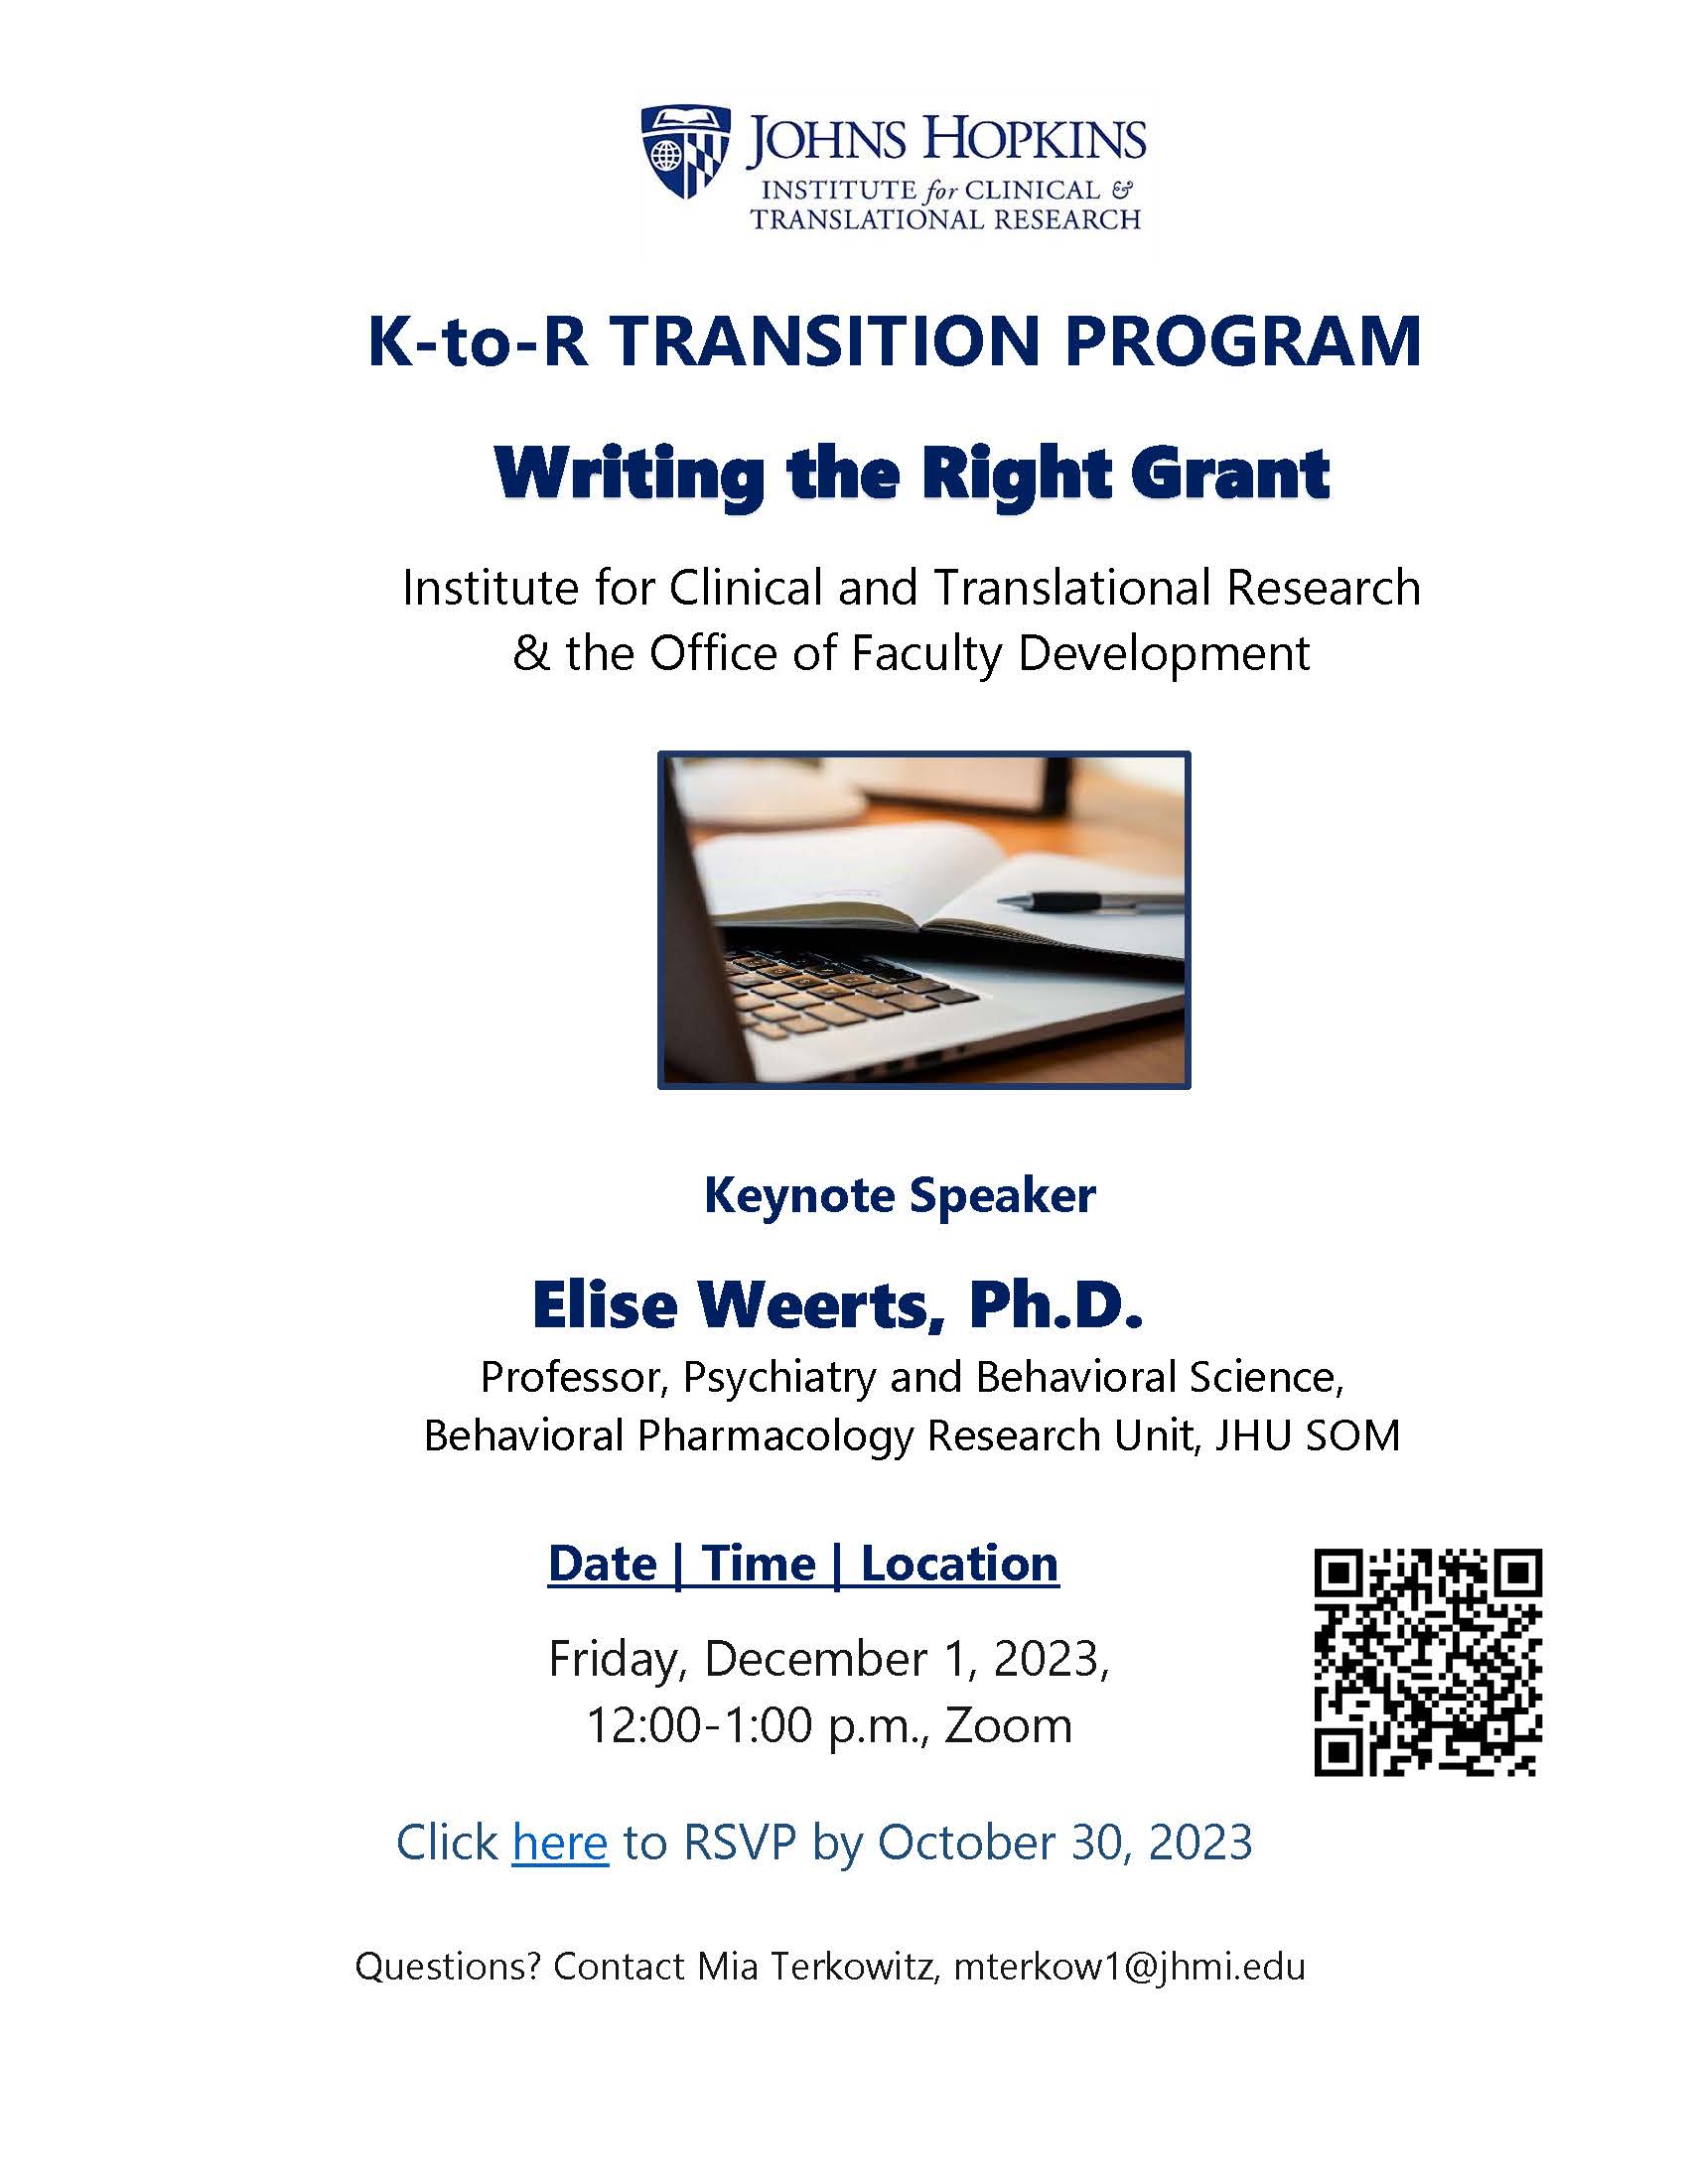 K to R Transition Seminar December 1 2023